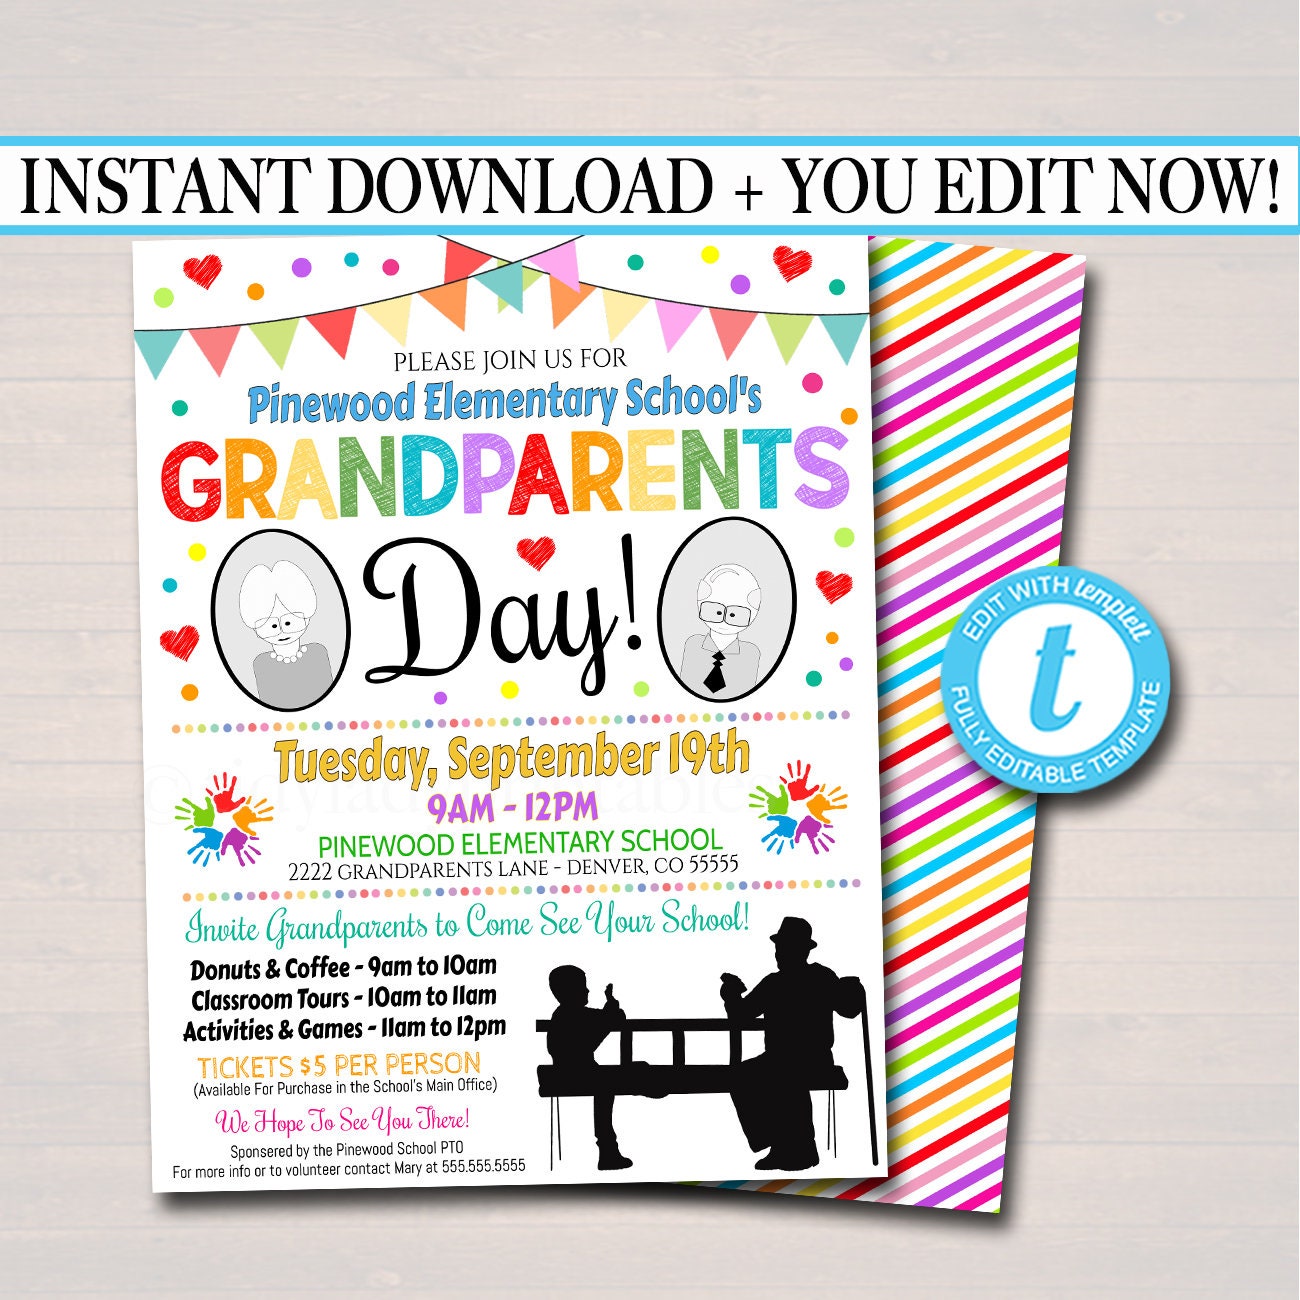 Grandparents Day Invitation Template